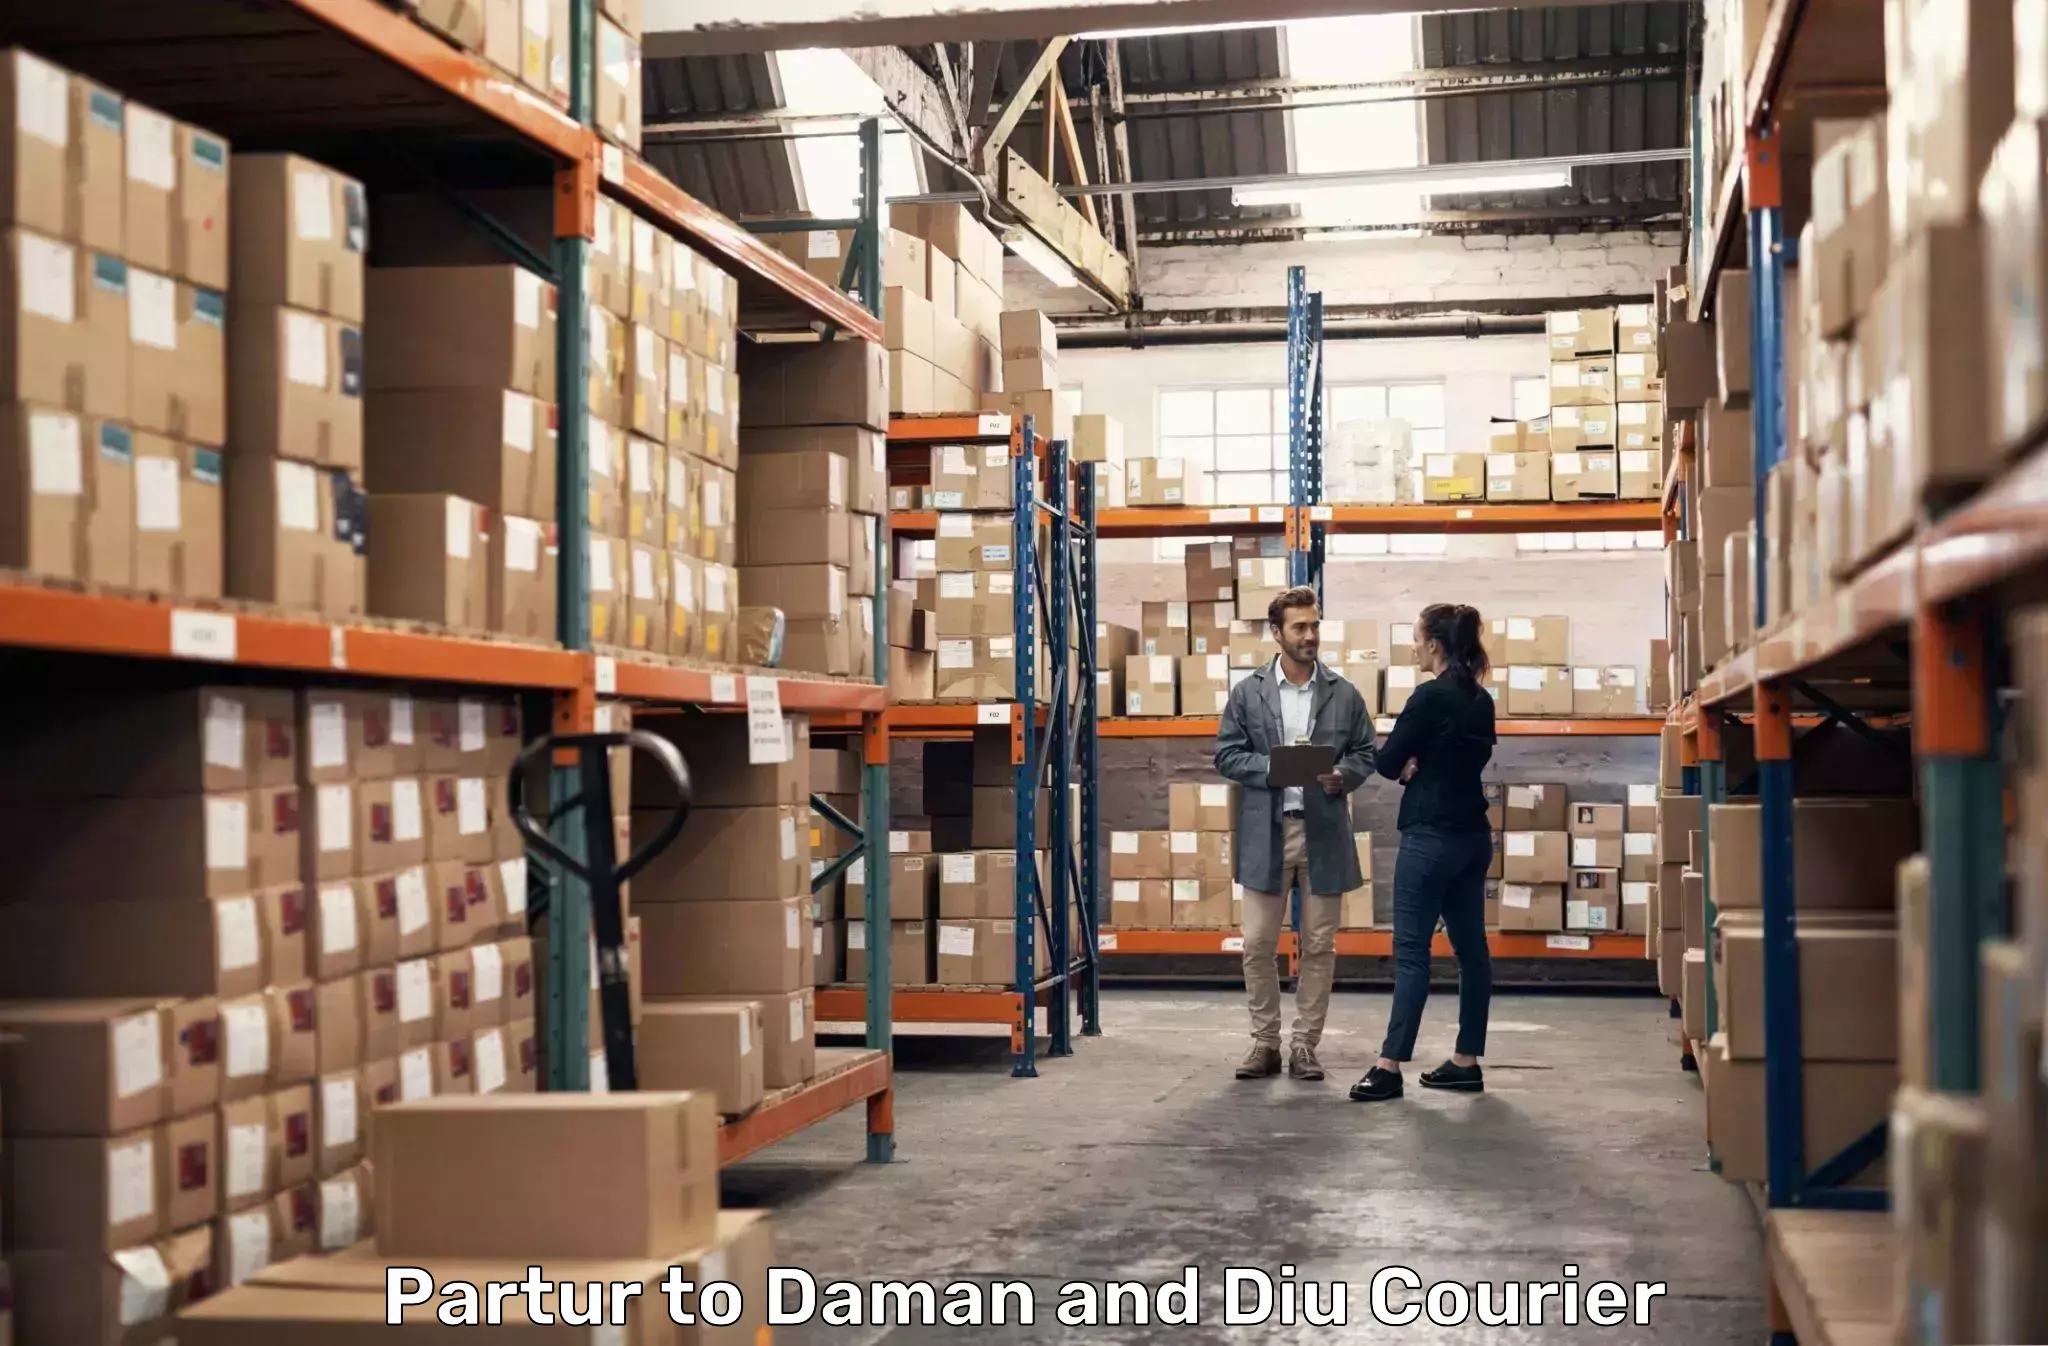 Courier service comparison Partur to Daman and Diu